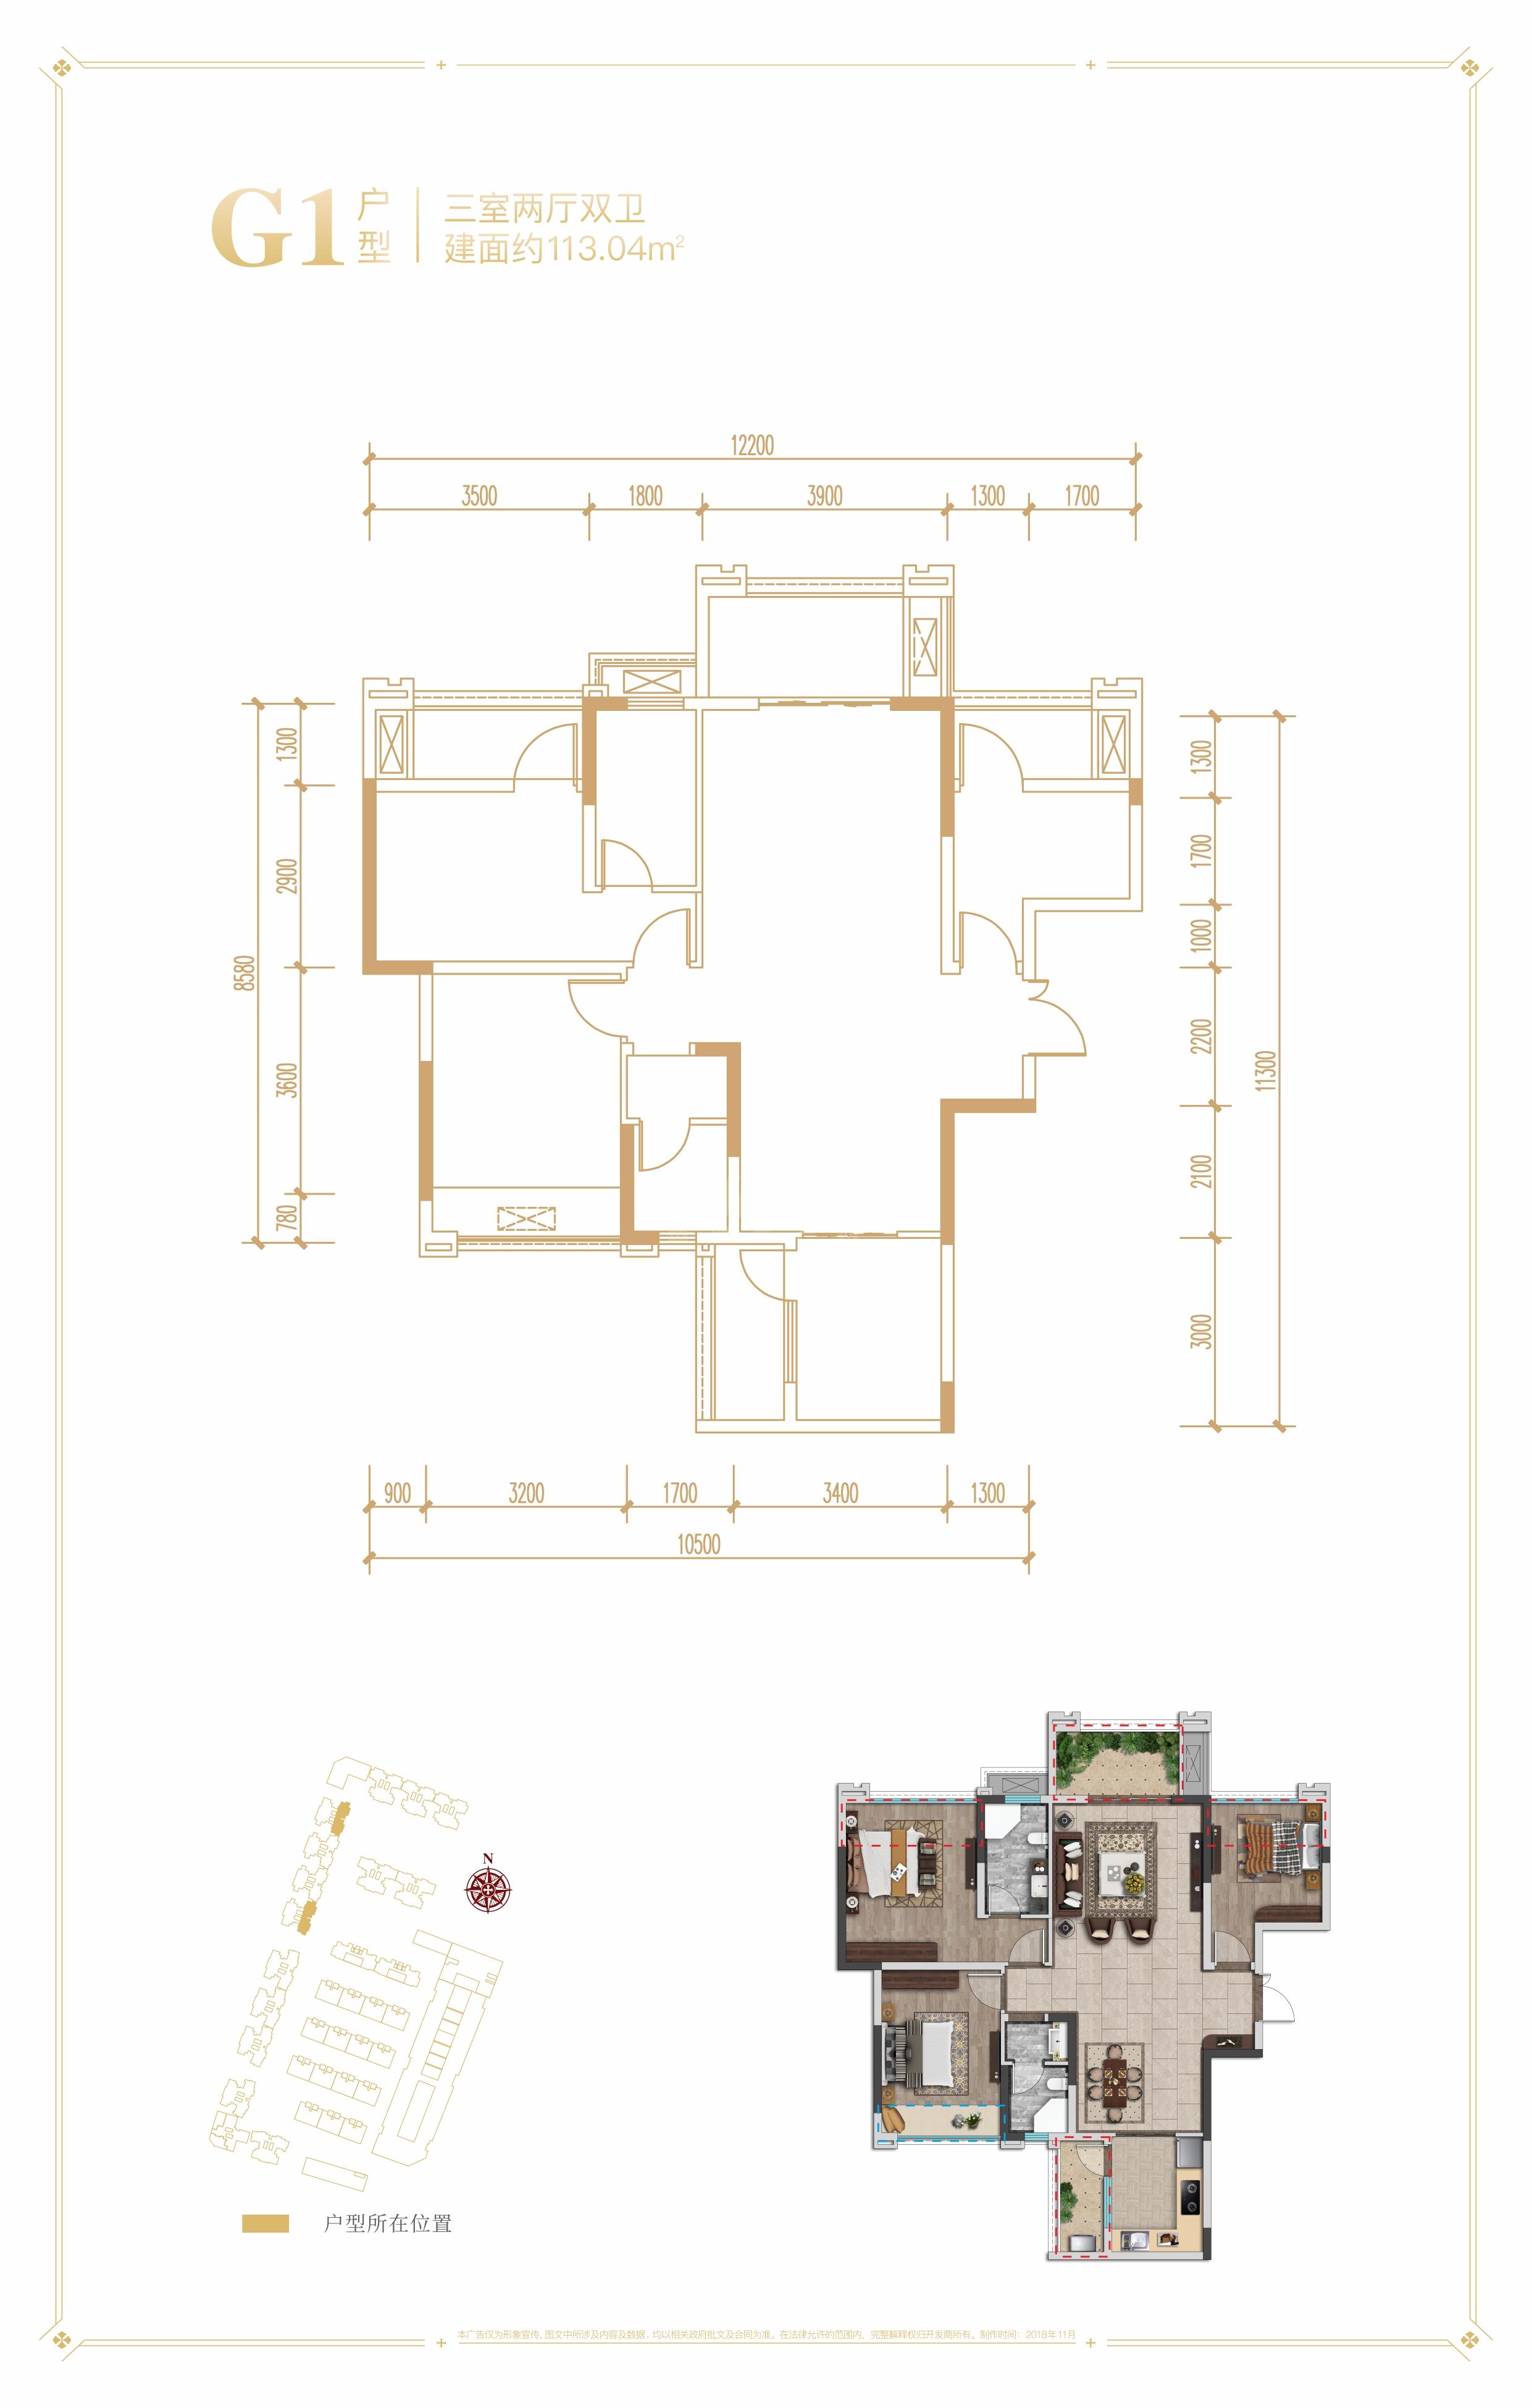 香楠国际1期g1户型图,3室2厅2卫113.04平米- 成都透明房产网